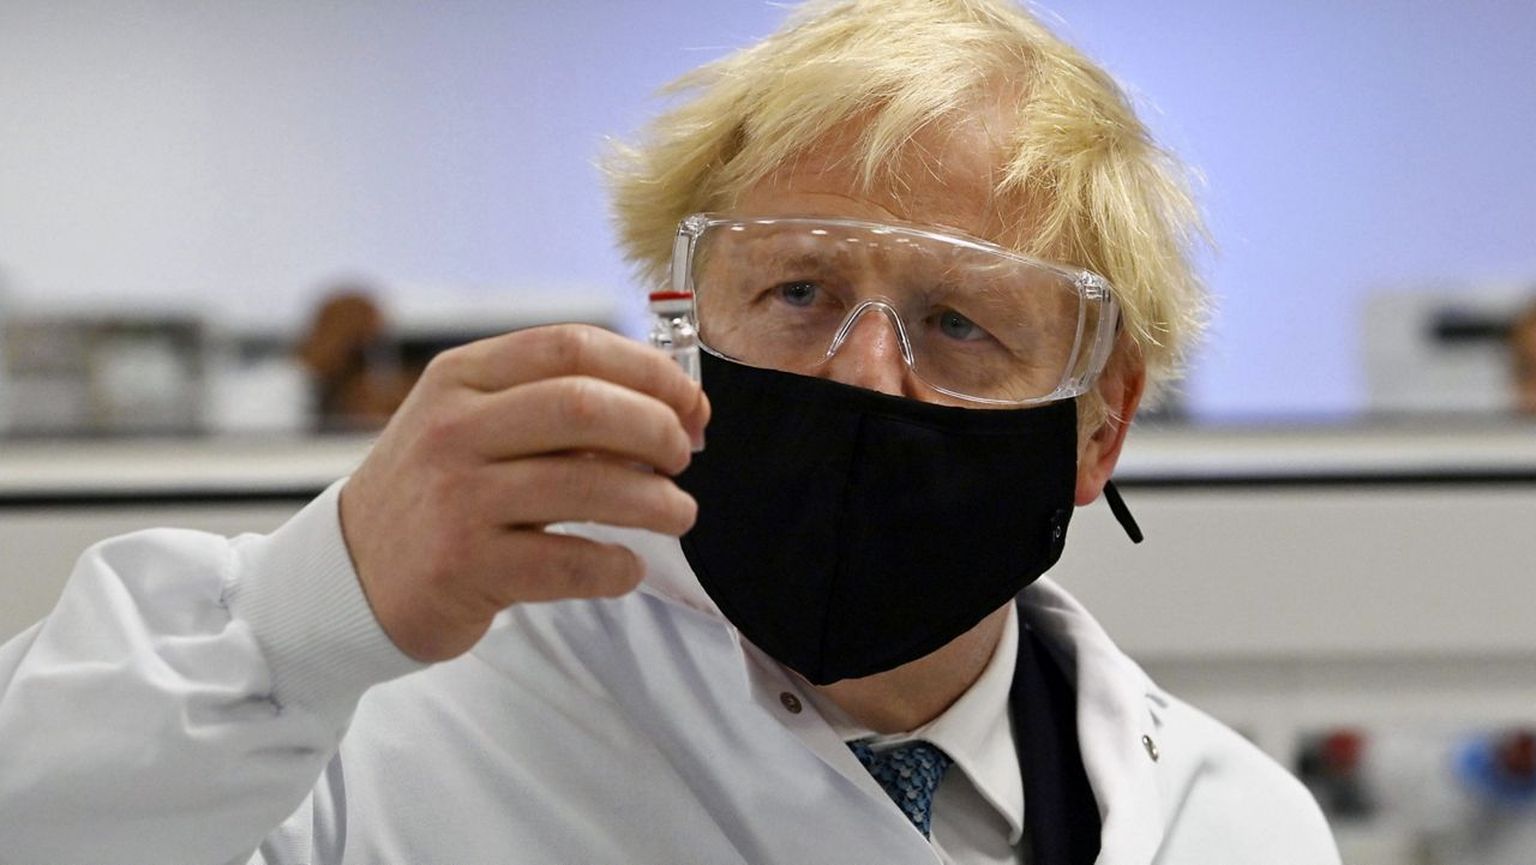 TEKITAB VAIDLUSI: Briti peaminister Boris Johnson poseerib ajakirjanikele AstraZeneca/Oxfordi koroonavaktsiiniga. Pilt on tehtud läinud aasta 30. novembril. Euroopa Liit andis sellele vaktsiinile kasutusloa alles jaanuari lõpus.